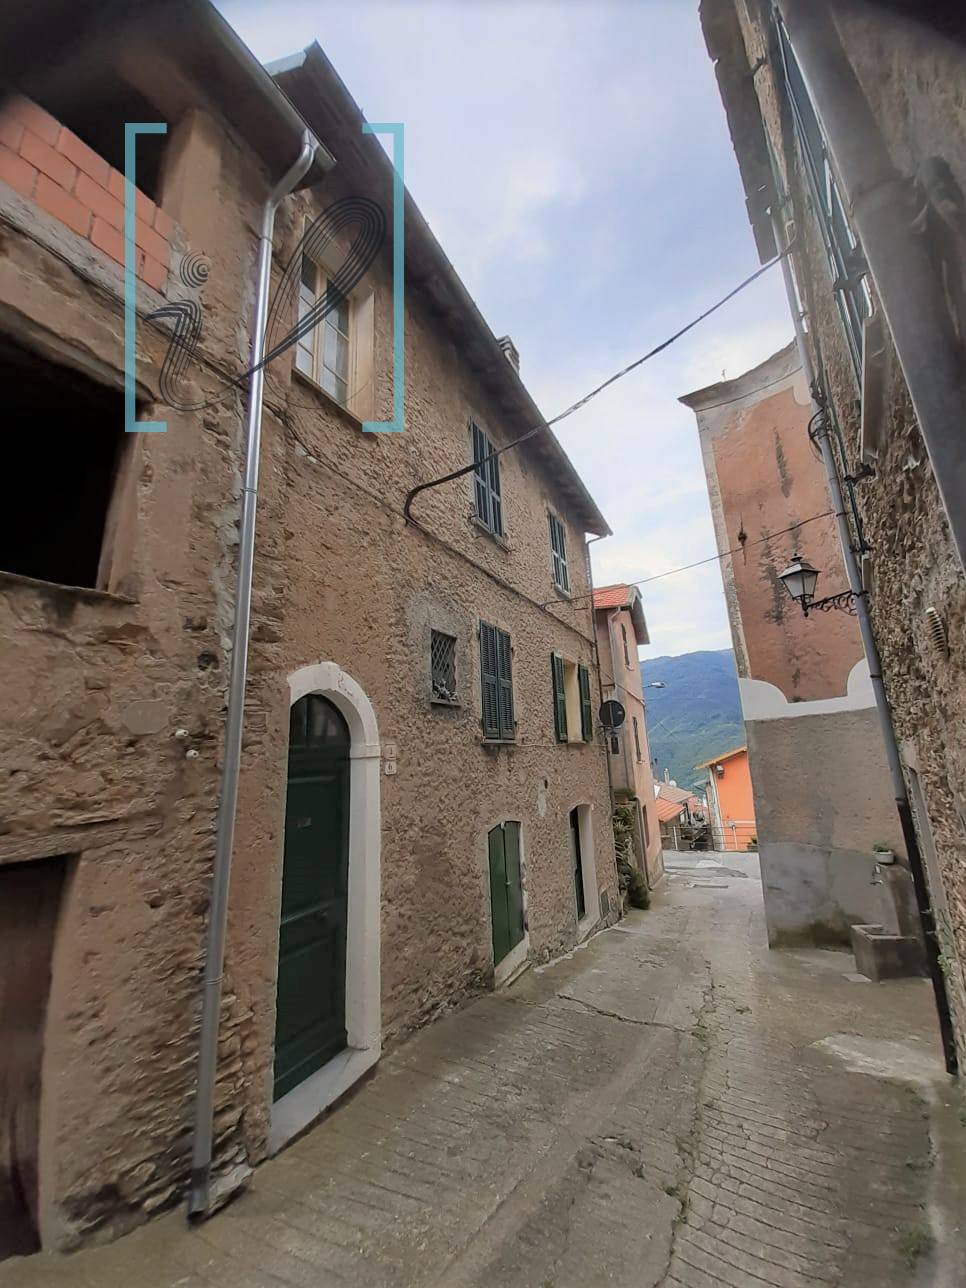 Rustico / Casale in vendita a Pornassio, 4 locali, zona Zona: Ottano, prezzo € 75.000 | CambioCasa.it